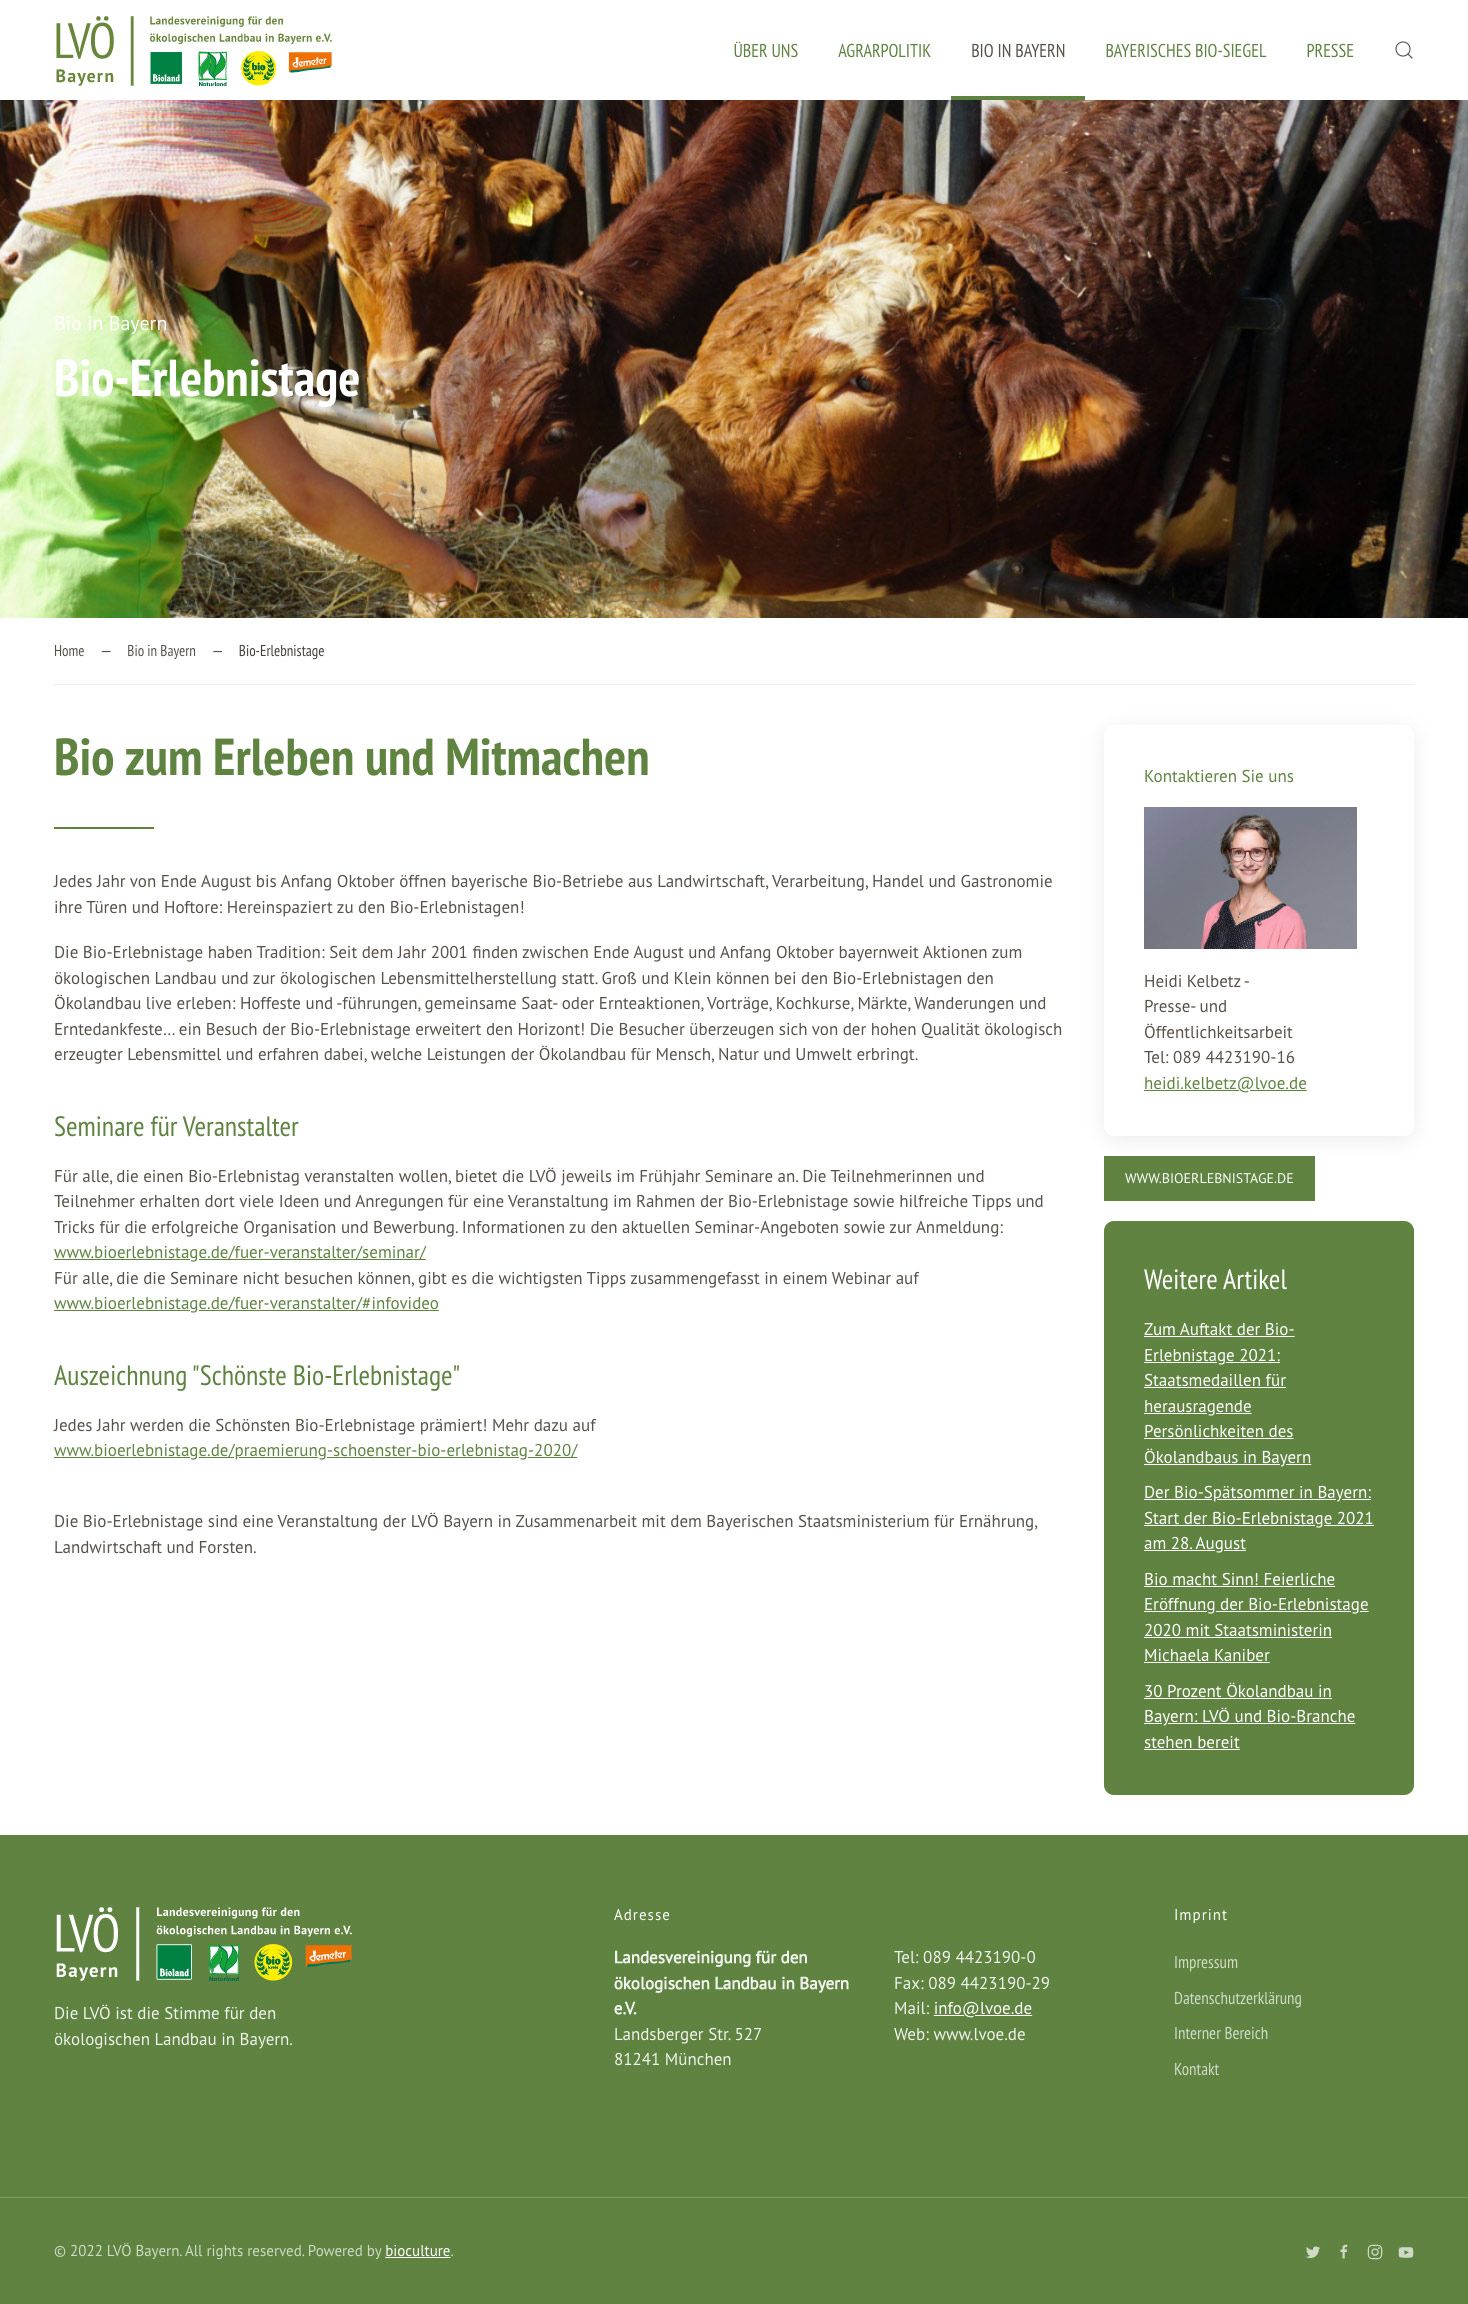 Subpage Gestaltung der Bio in Bayern LVÖ